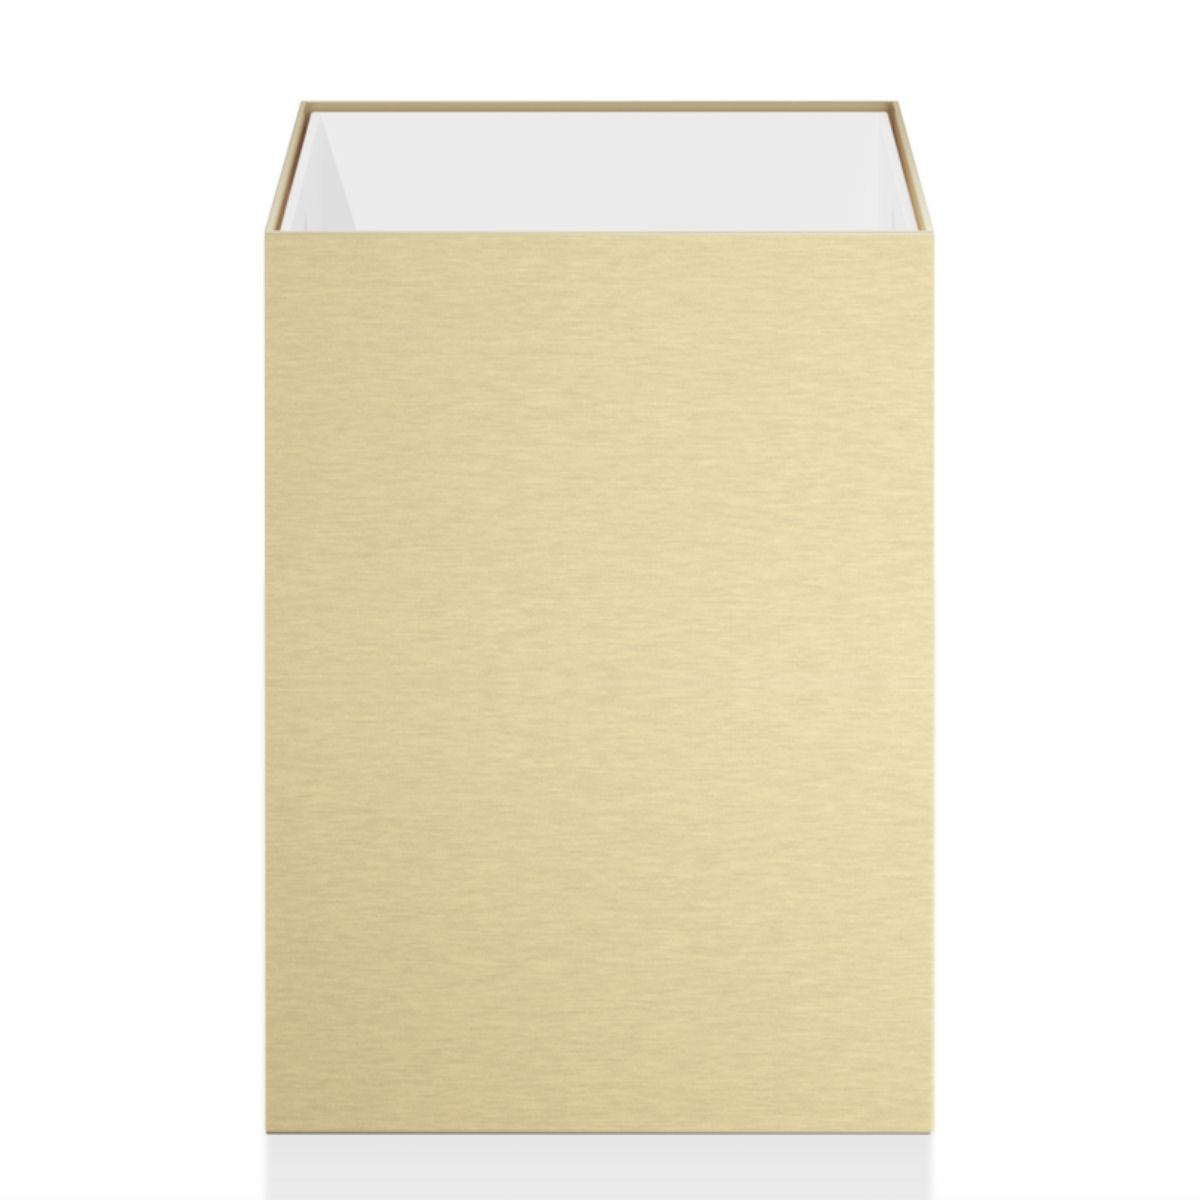 Matt Gold Square Room Paper Bin by Decor Walther - |VESIMI Design|